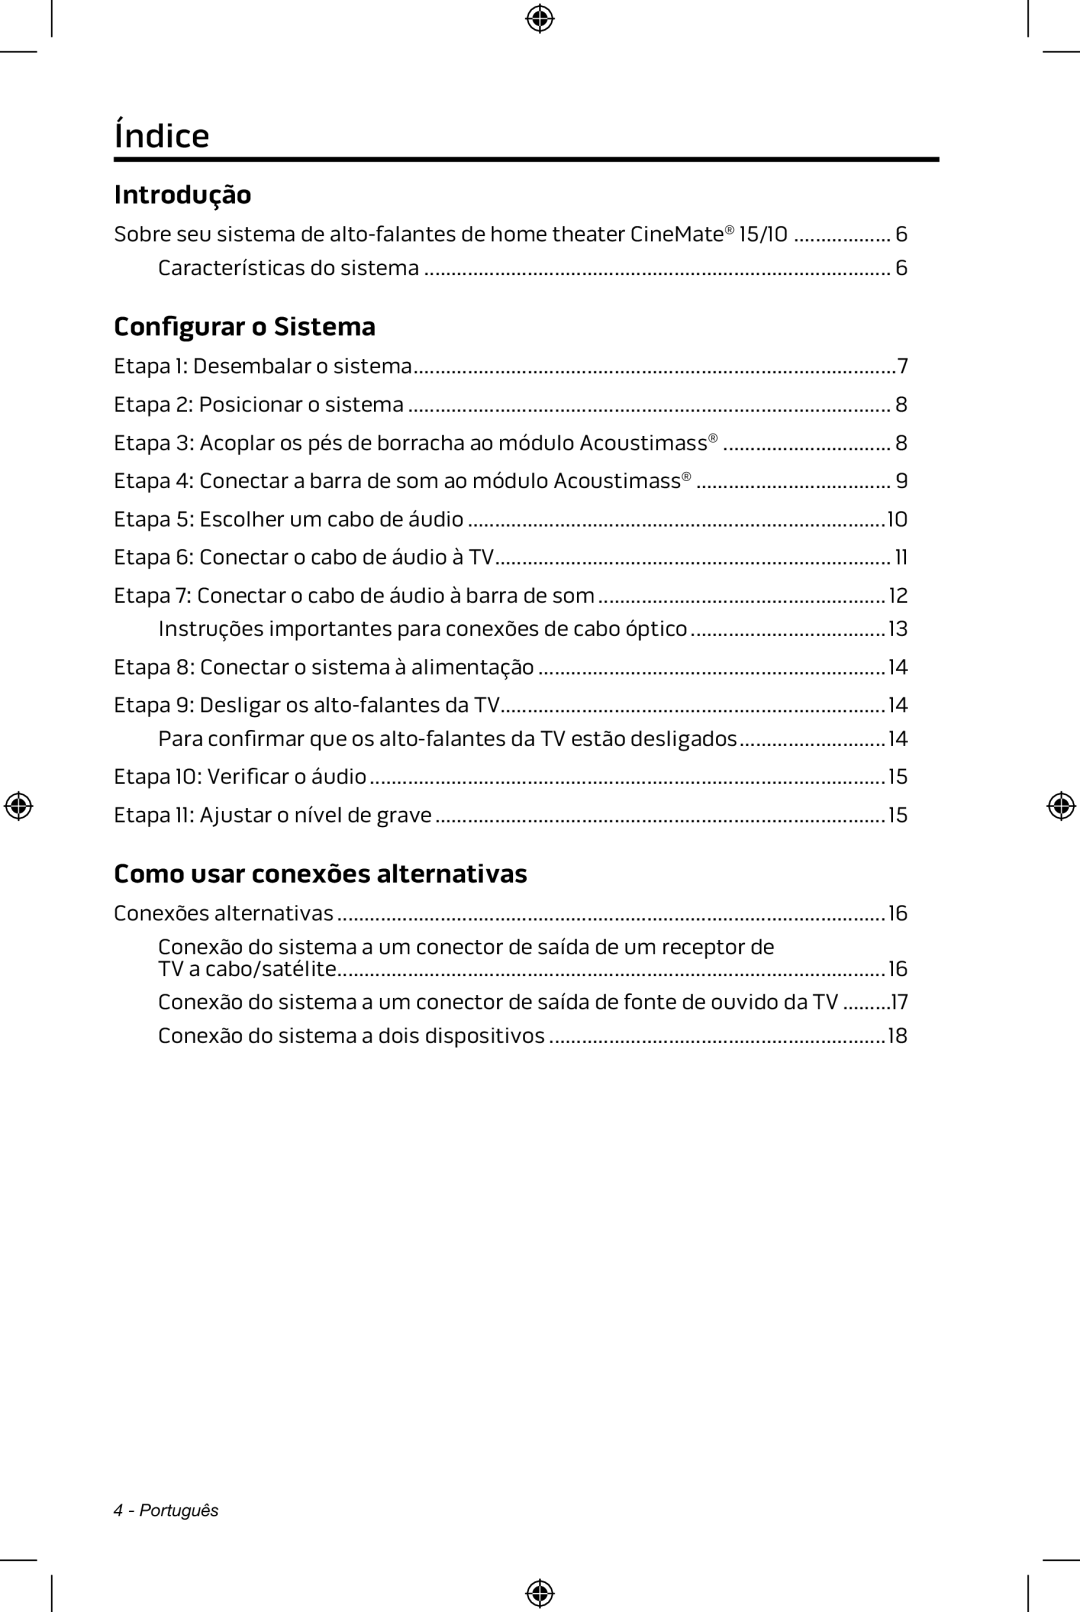 Bose CineMate 15/10 manual Índice, Introdução, Configurar o Sistema, Como usar conexões alternativas 